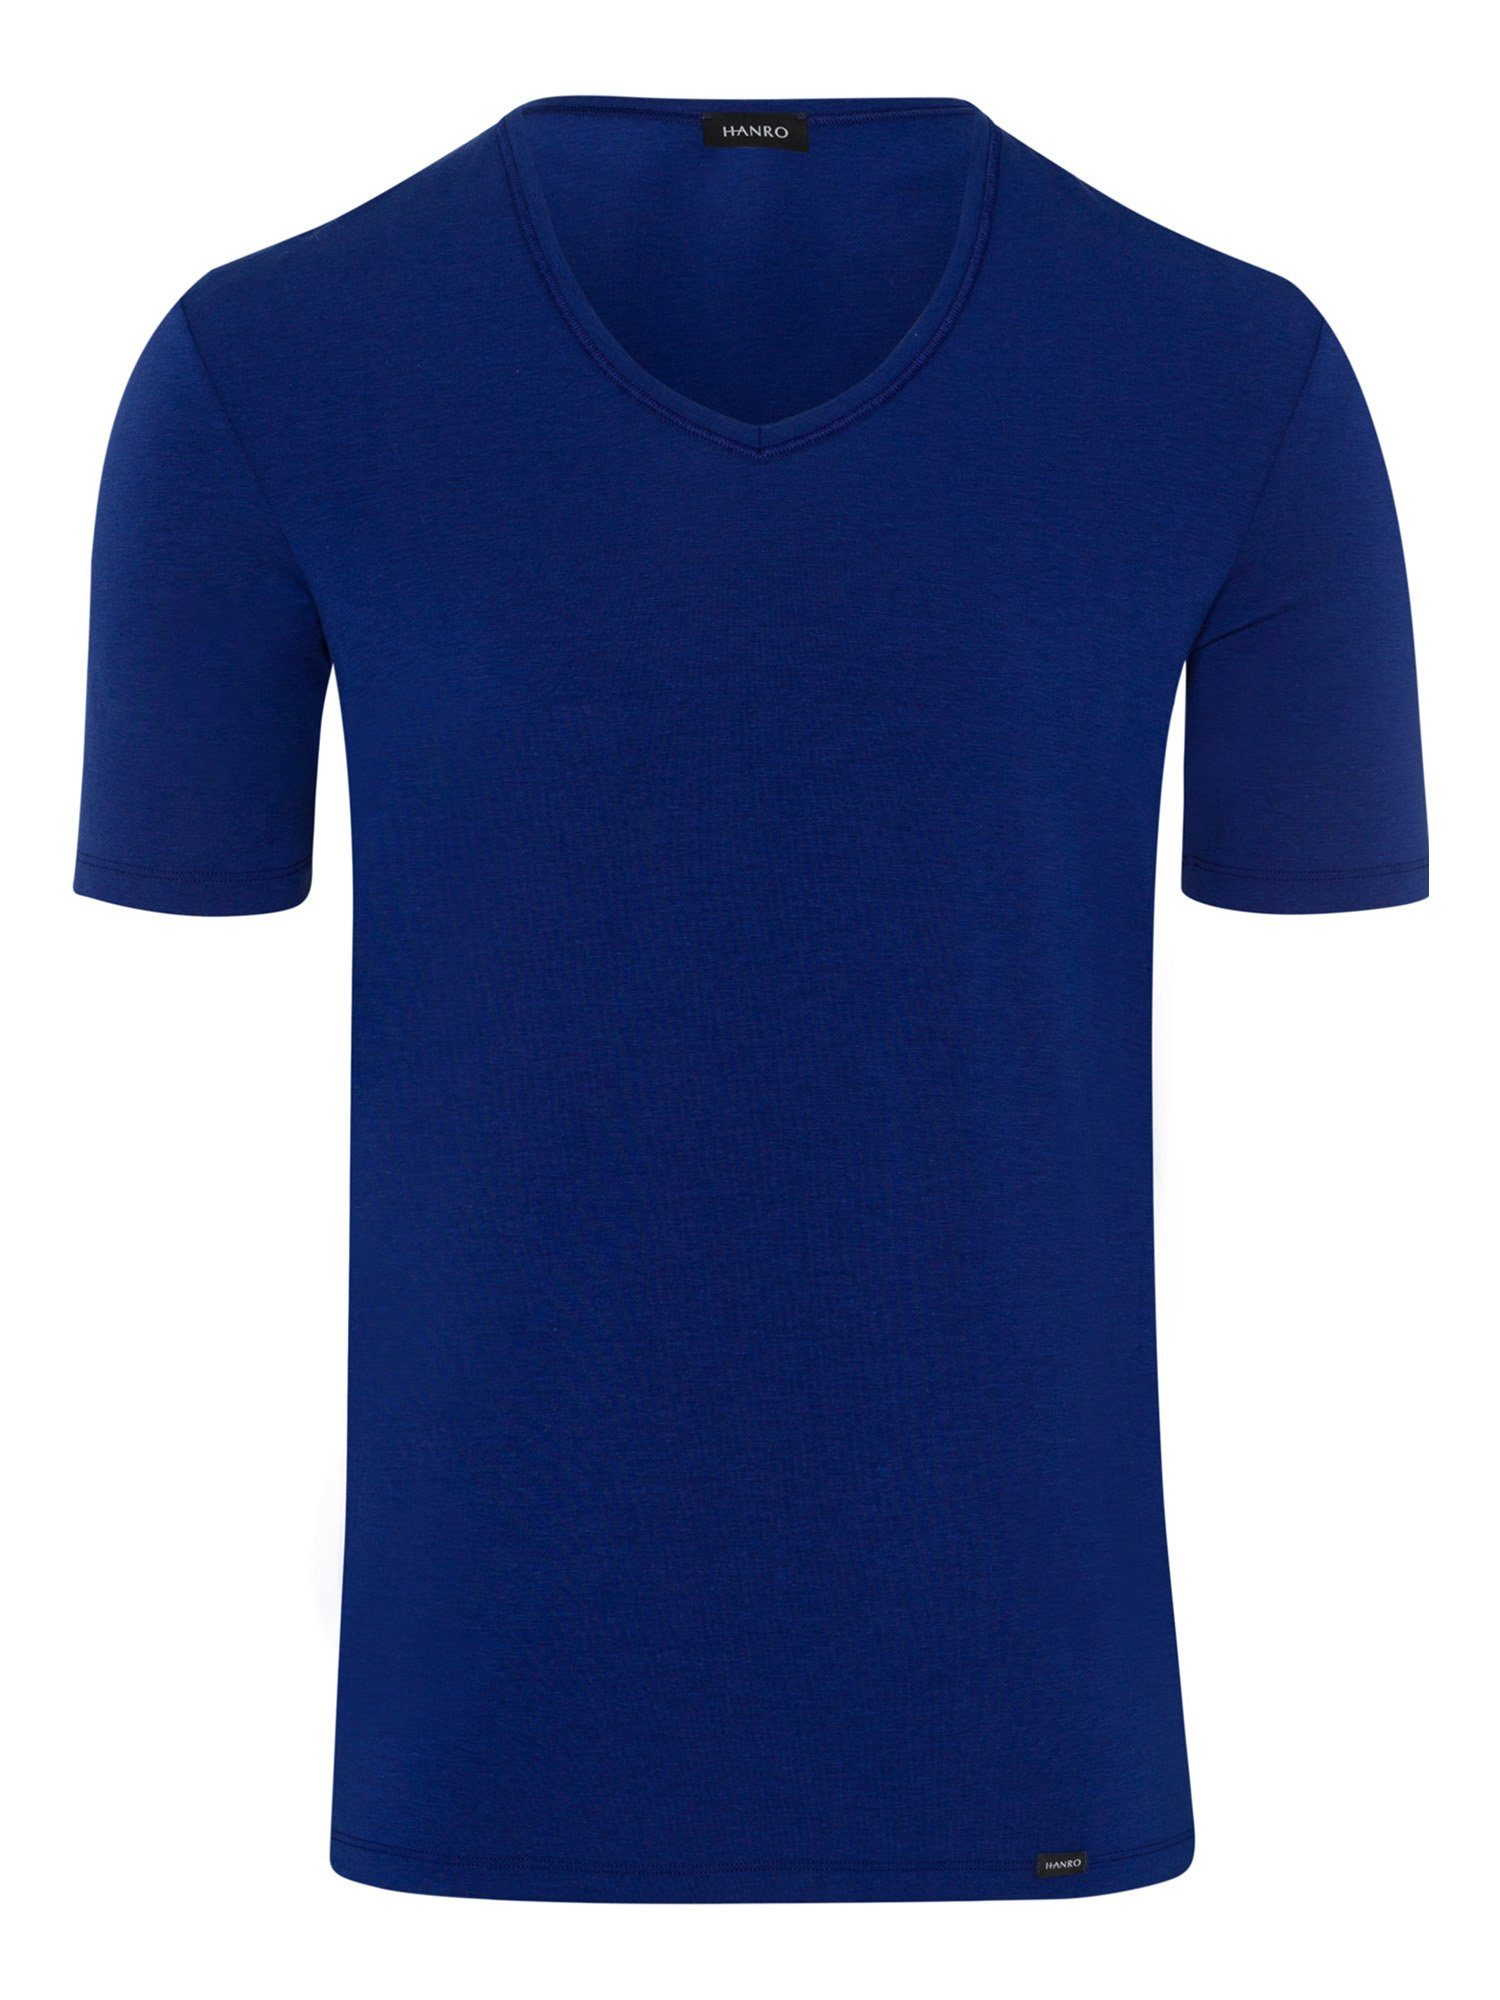 Hanro V-Shirt Natural Function space blue